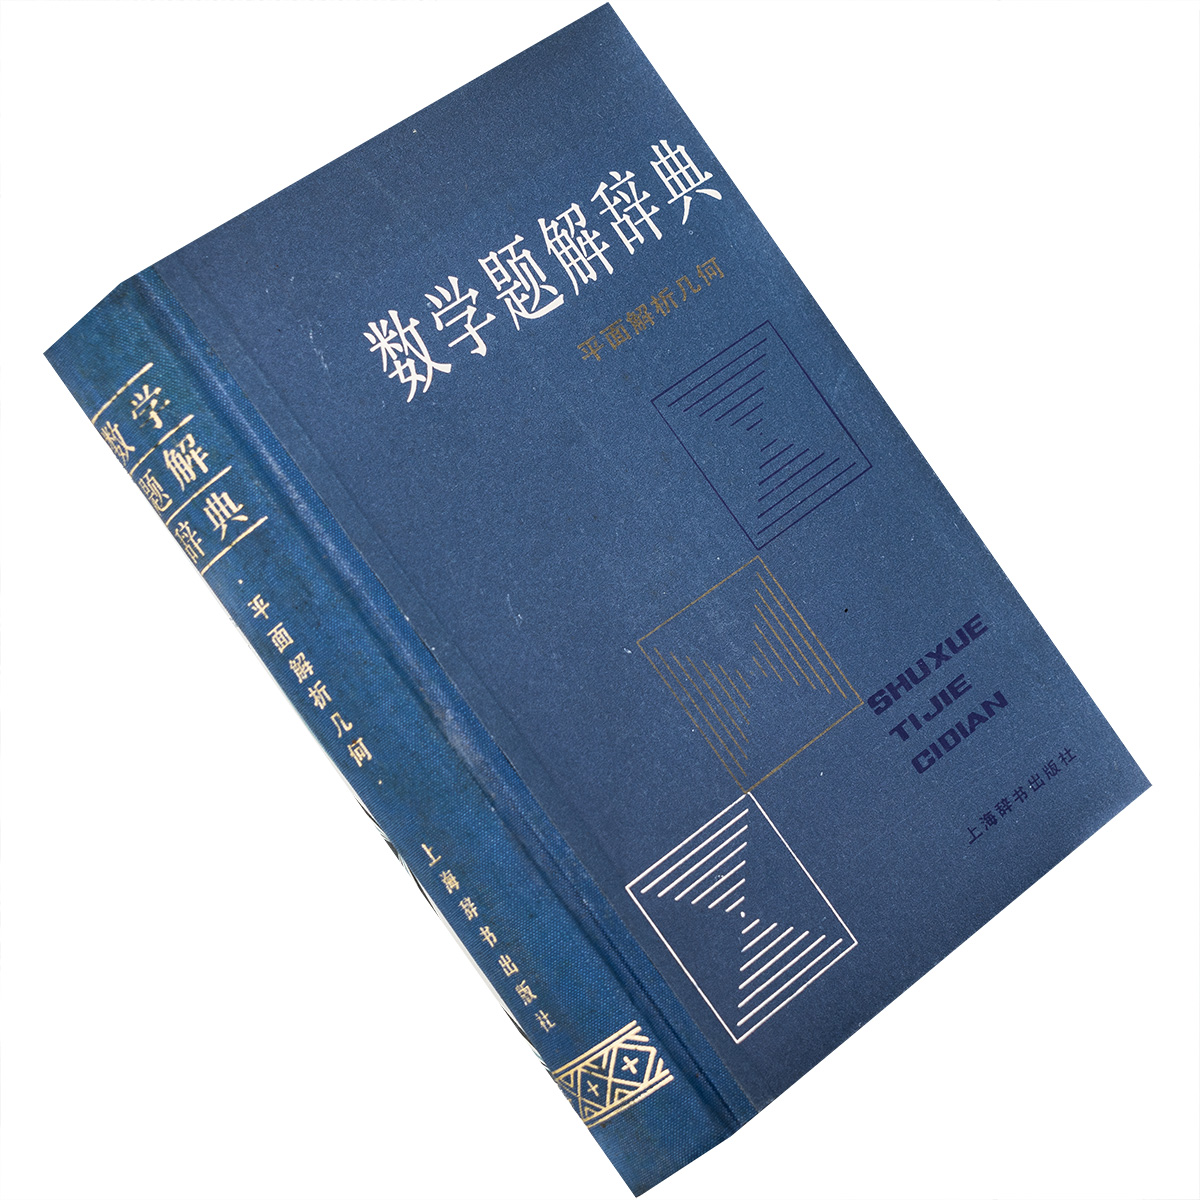 平面解析几何 数学题解辞典 9787532601998 精装 上海辞书 正版书籍 老版